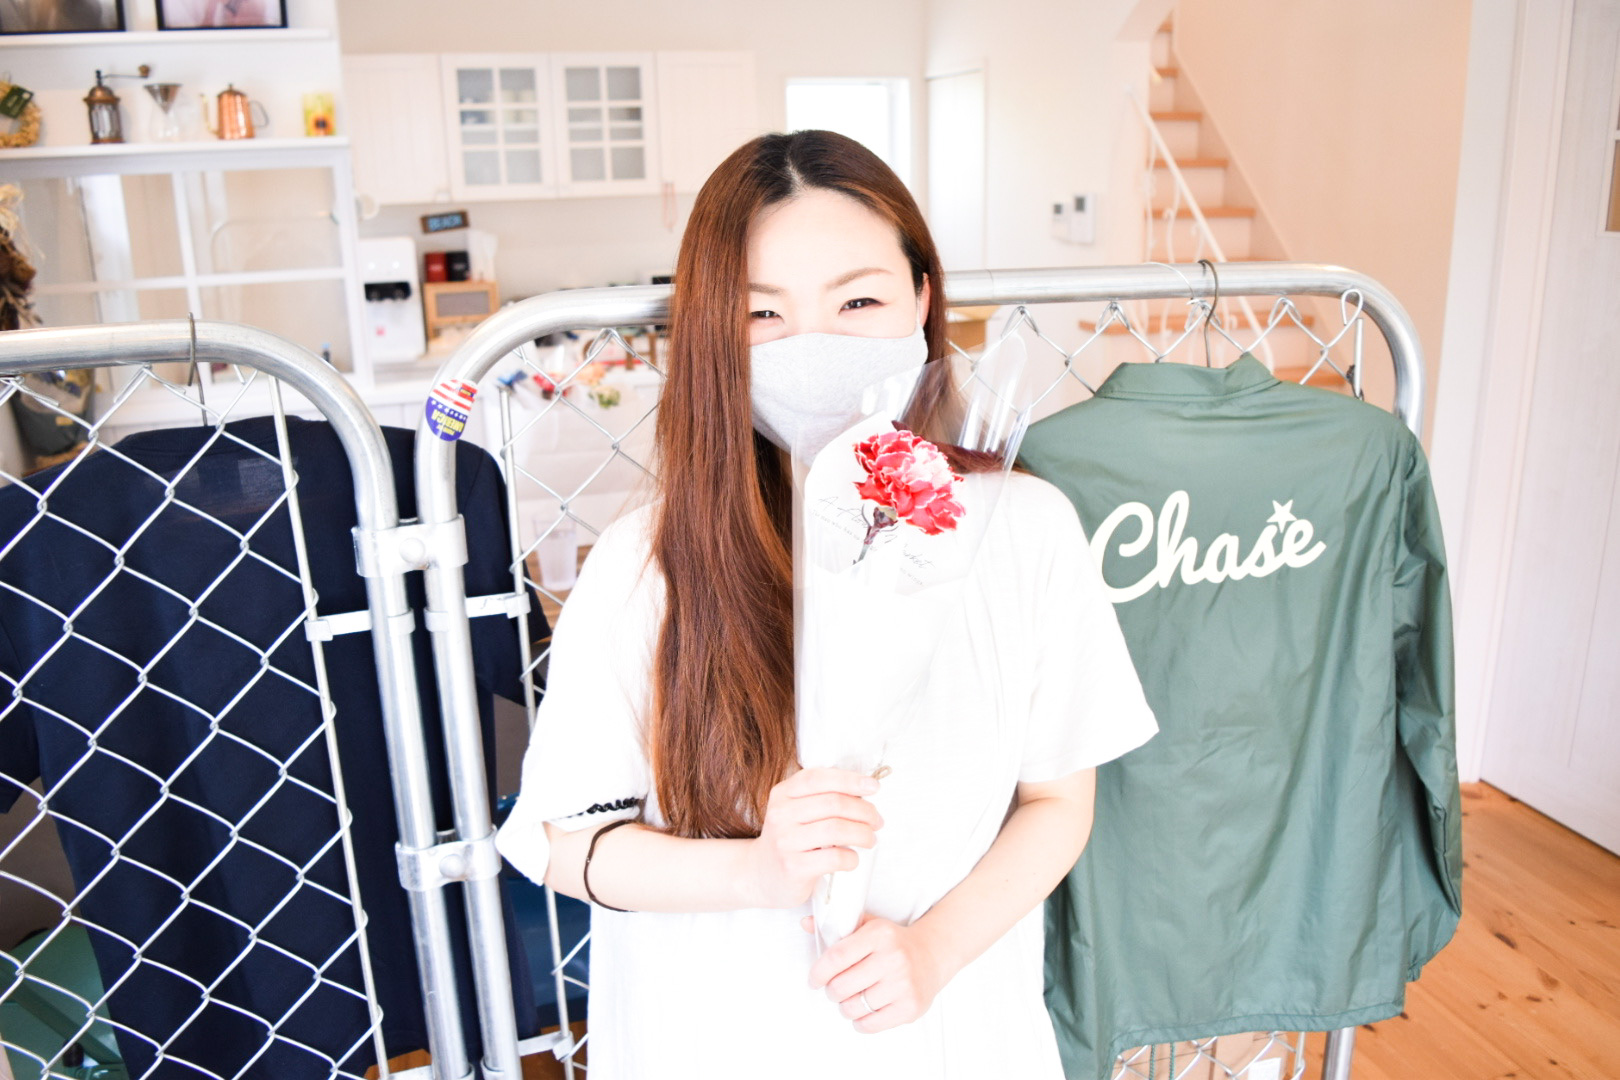 Chase | 熊本の女性専用ダイエット・パーソナルトレーニングジム